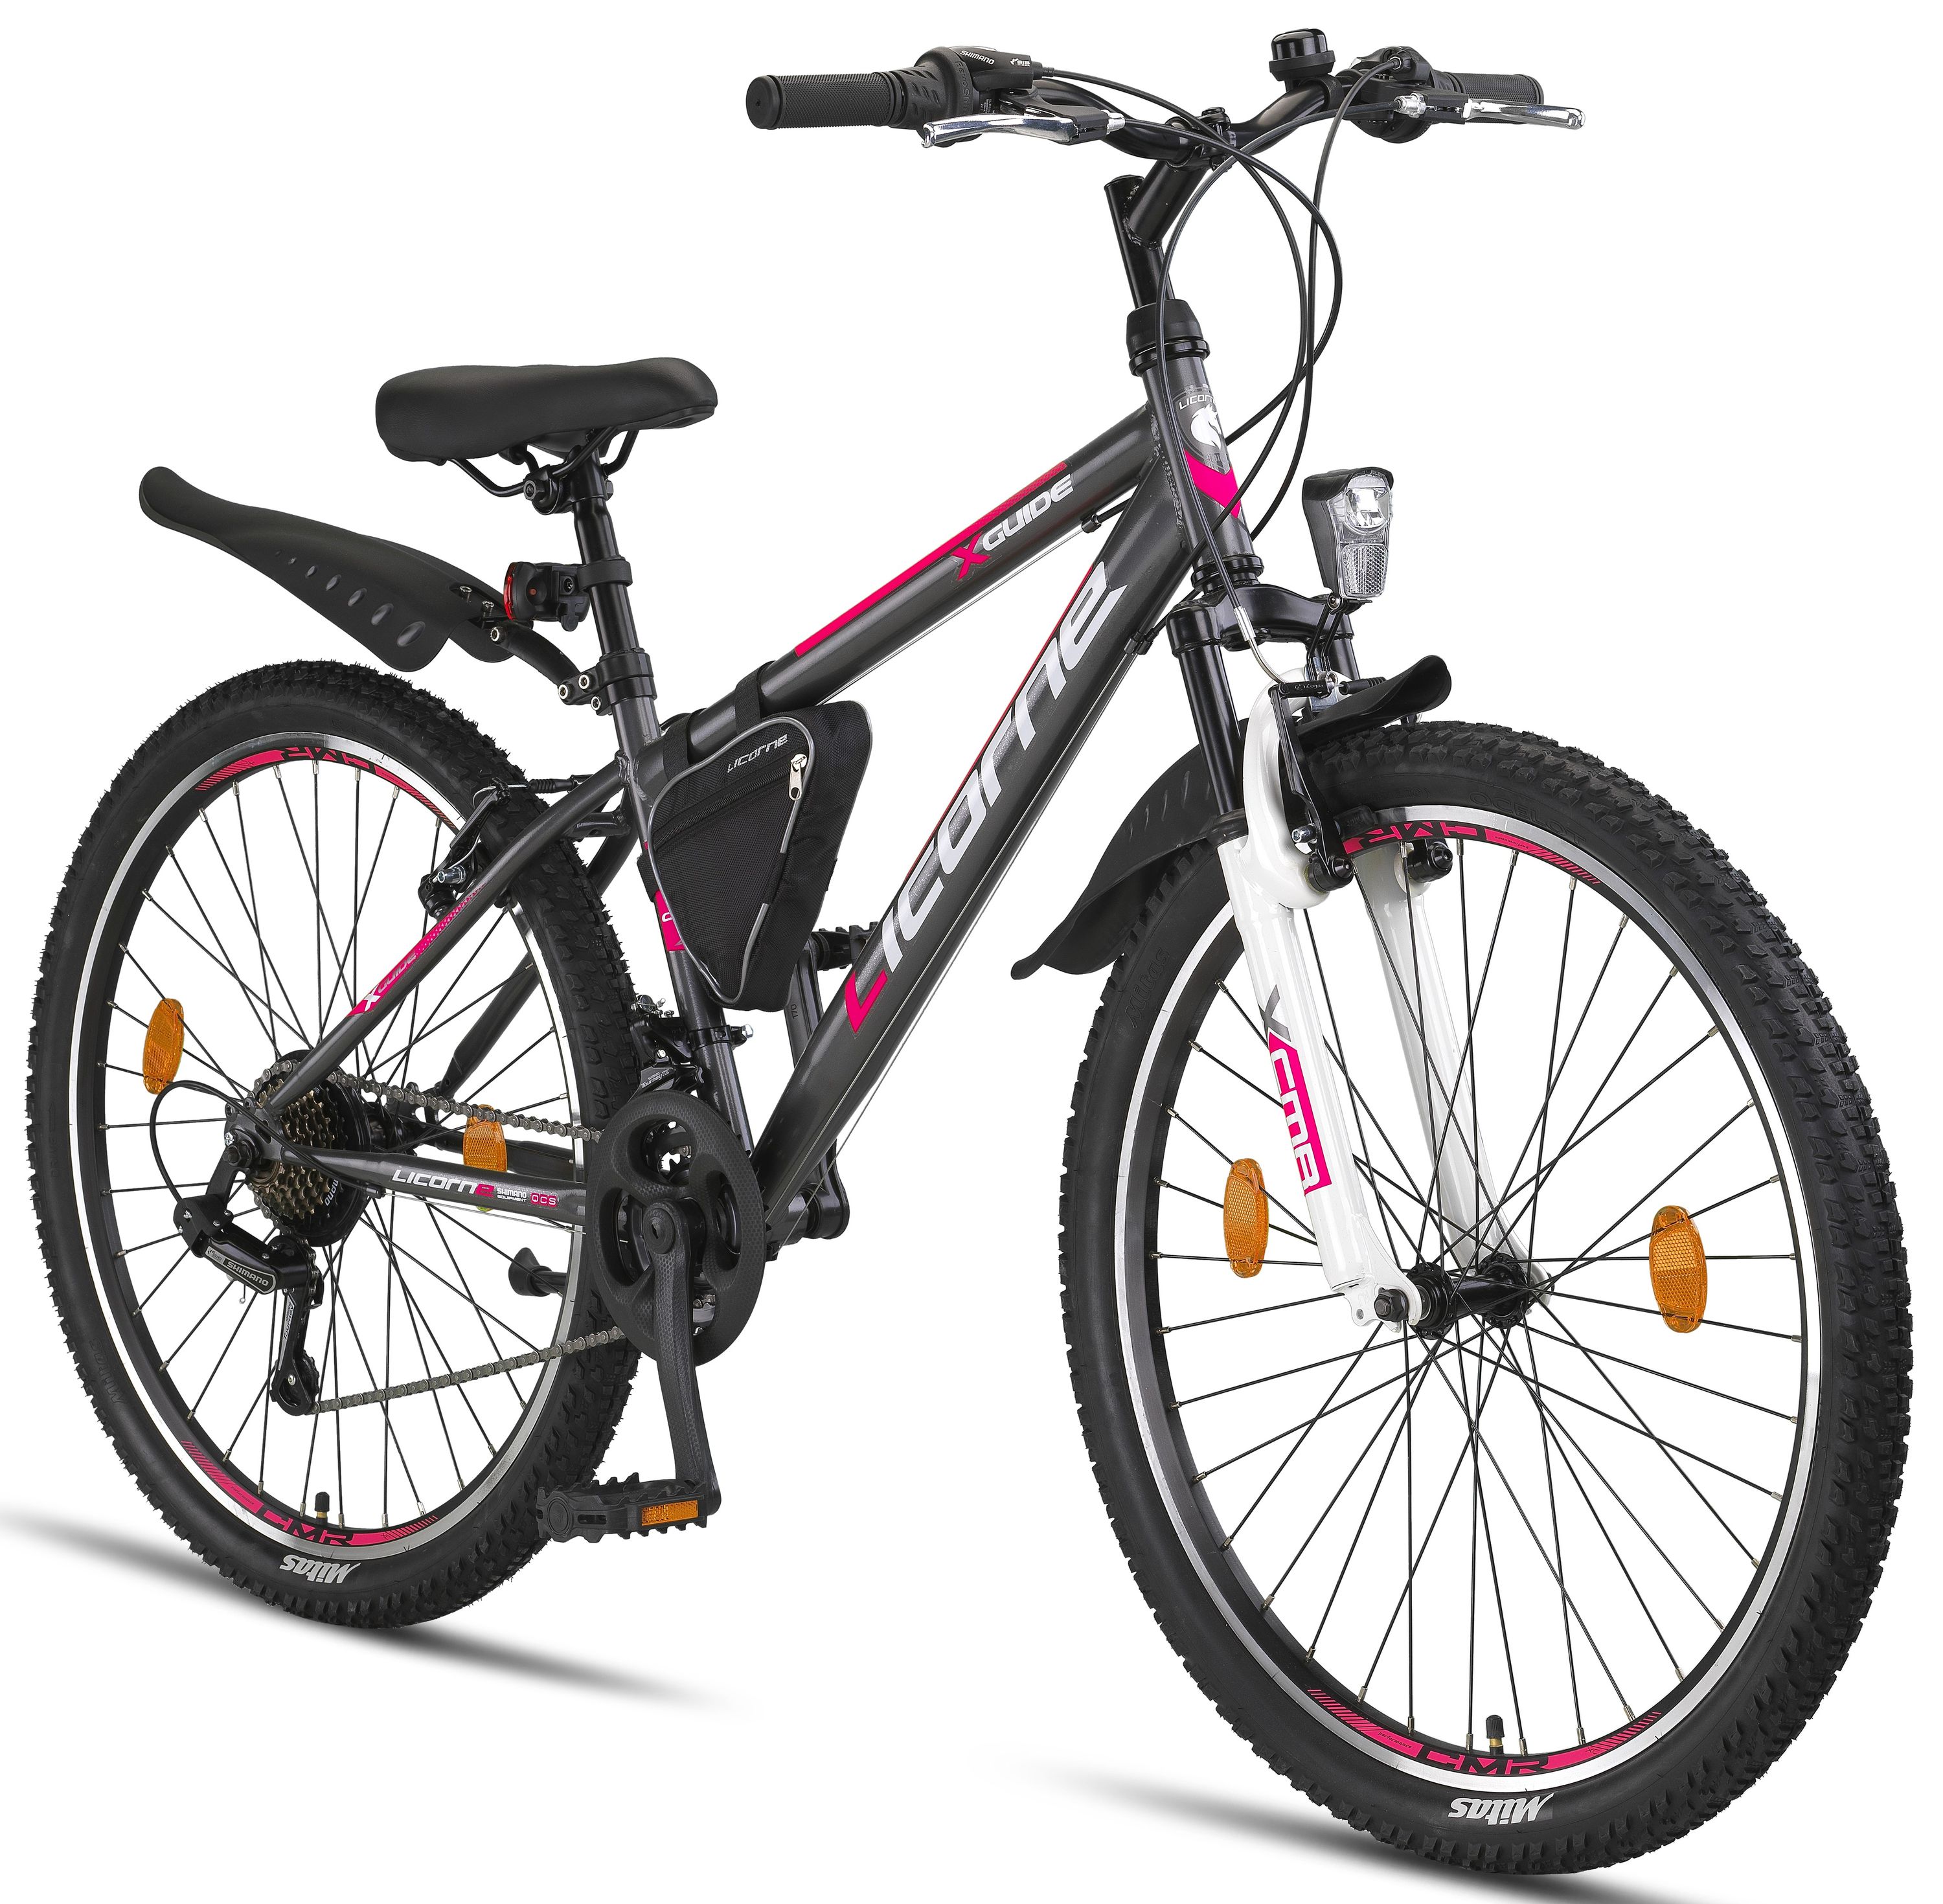 Licorne Bike Guide Premium mountain bike in 20, 24 e 26 pollici - bici per ragazze, ragazzi, uomini e donne - cambio Shimano a 21 velocità, bici per bambini, ragazzi